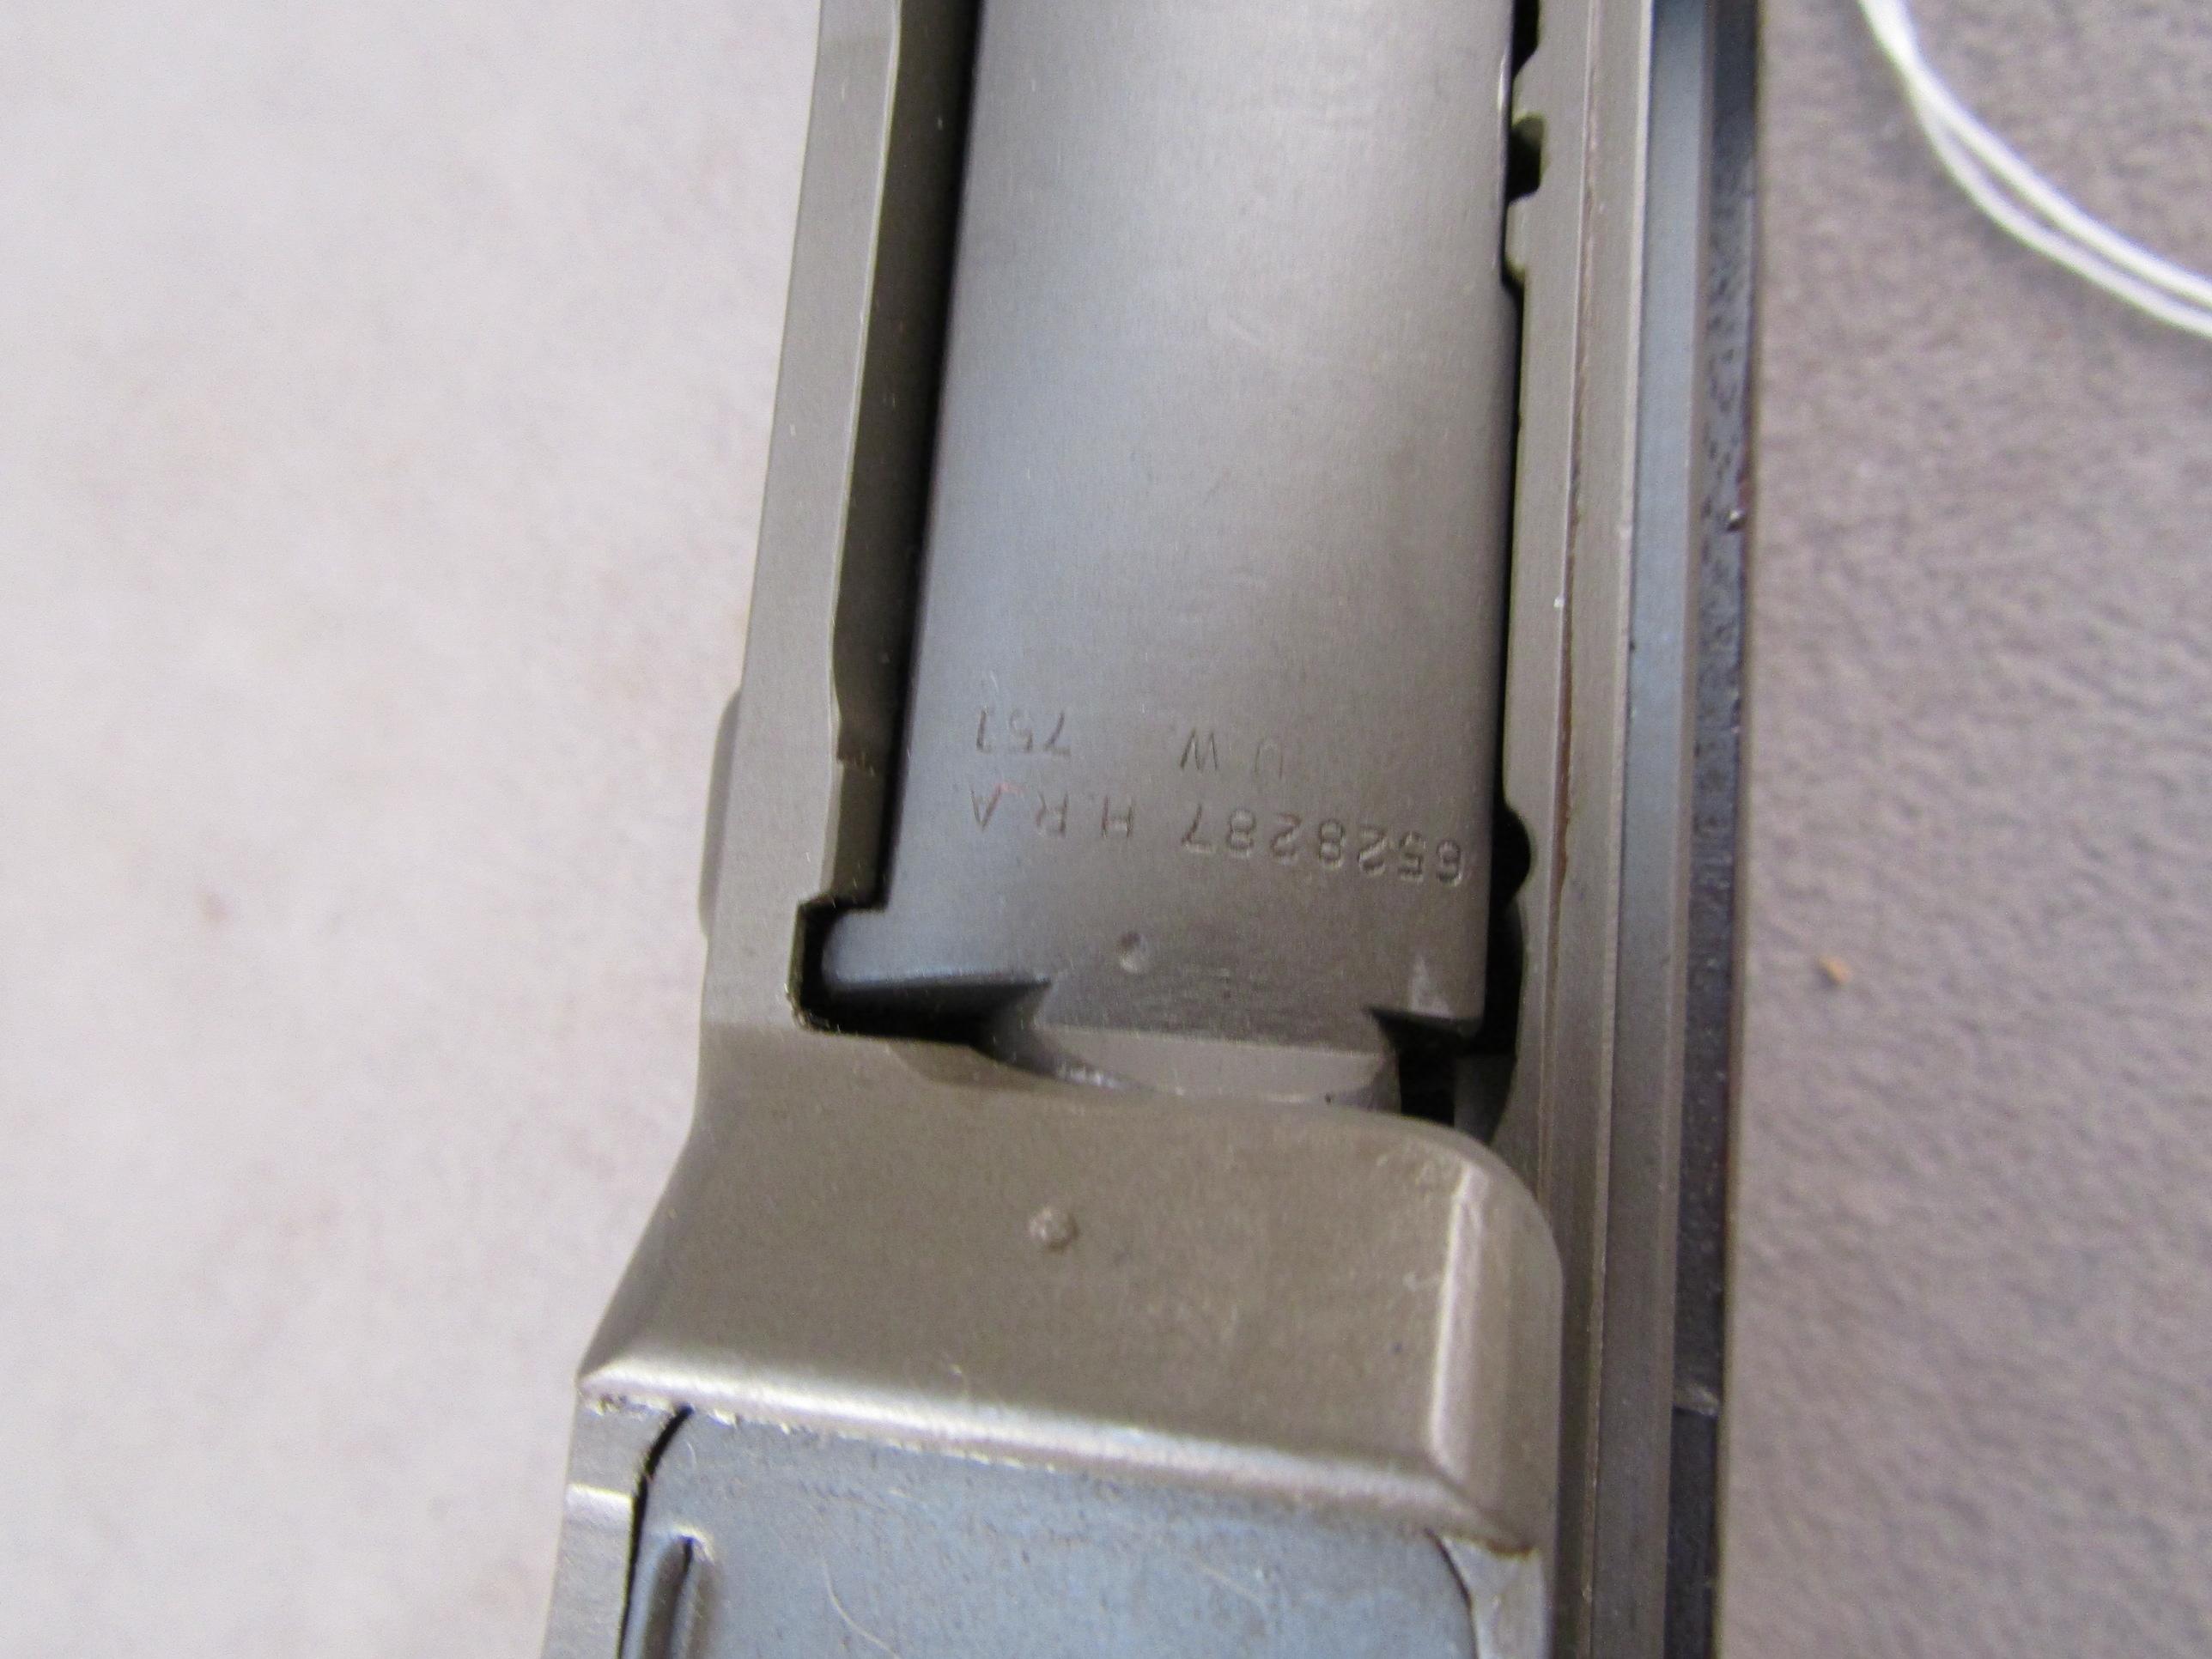 H&R M1 Garand, Semi-Auto Rifle, 30-06, S#5714013